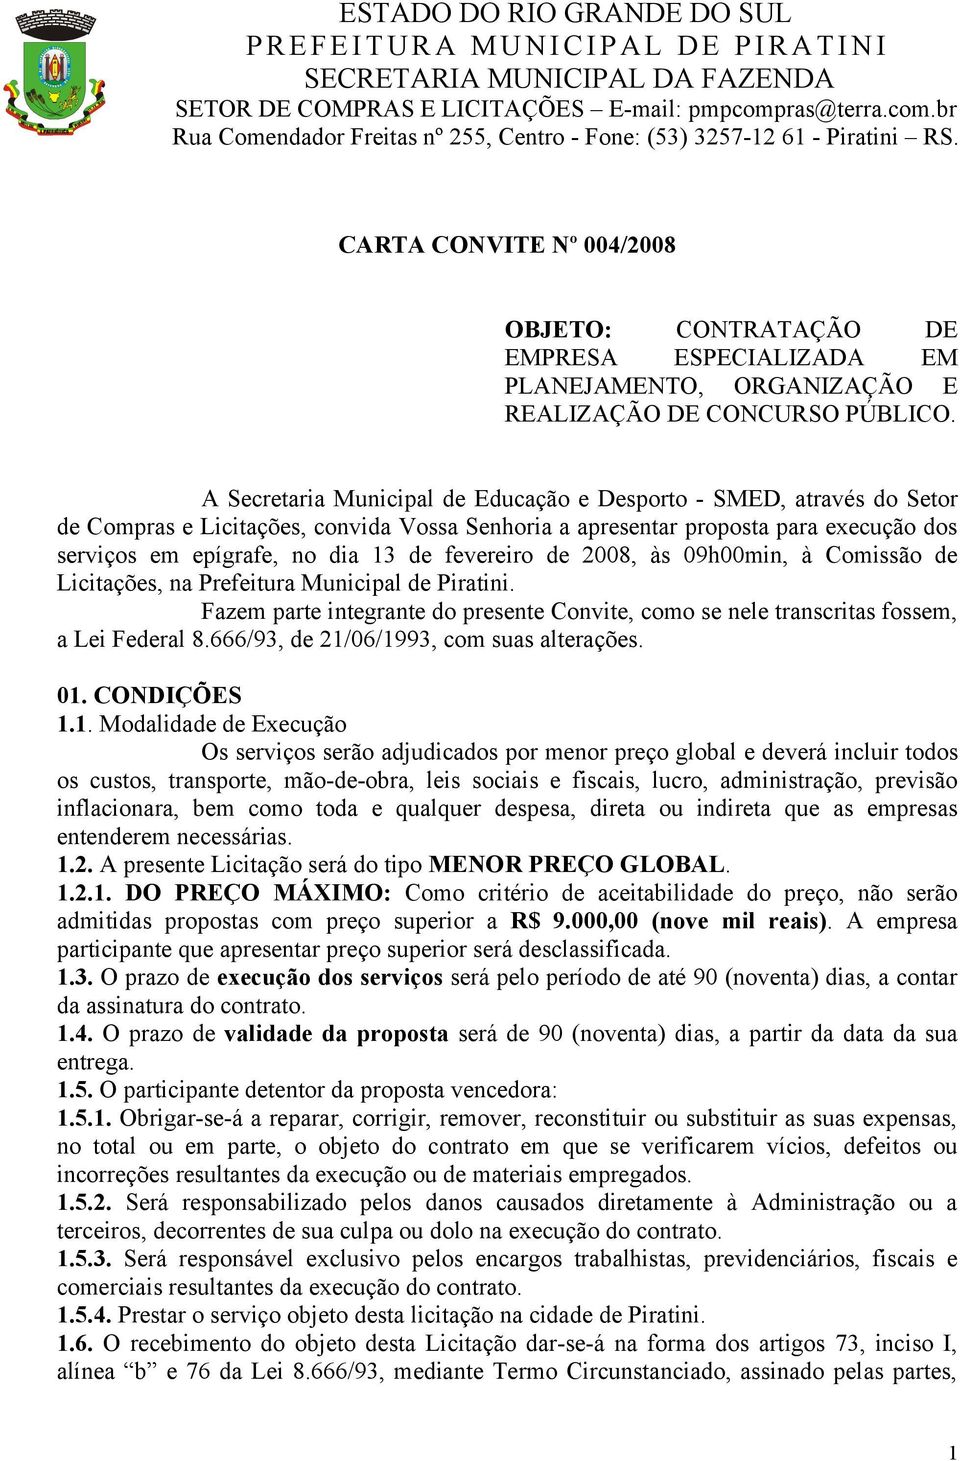 fevereiro de 2008, às 09h00min, à Comissão de Licitações, na Prefeitura Municipal de Piratini. Fazem parte integrante do presente Convite, como se nele transcritas fossem, a Lei Federal 8.